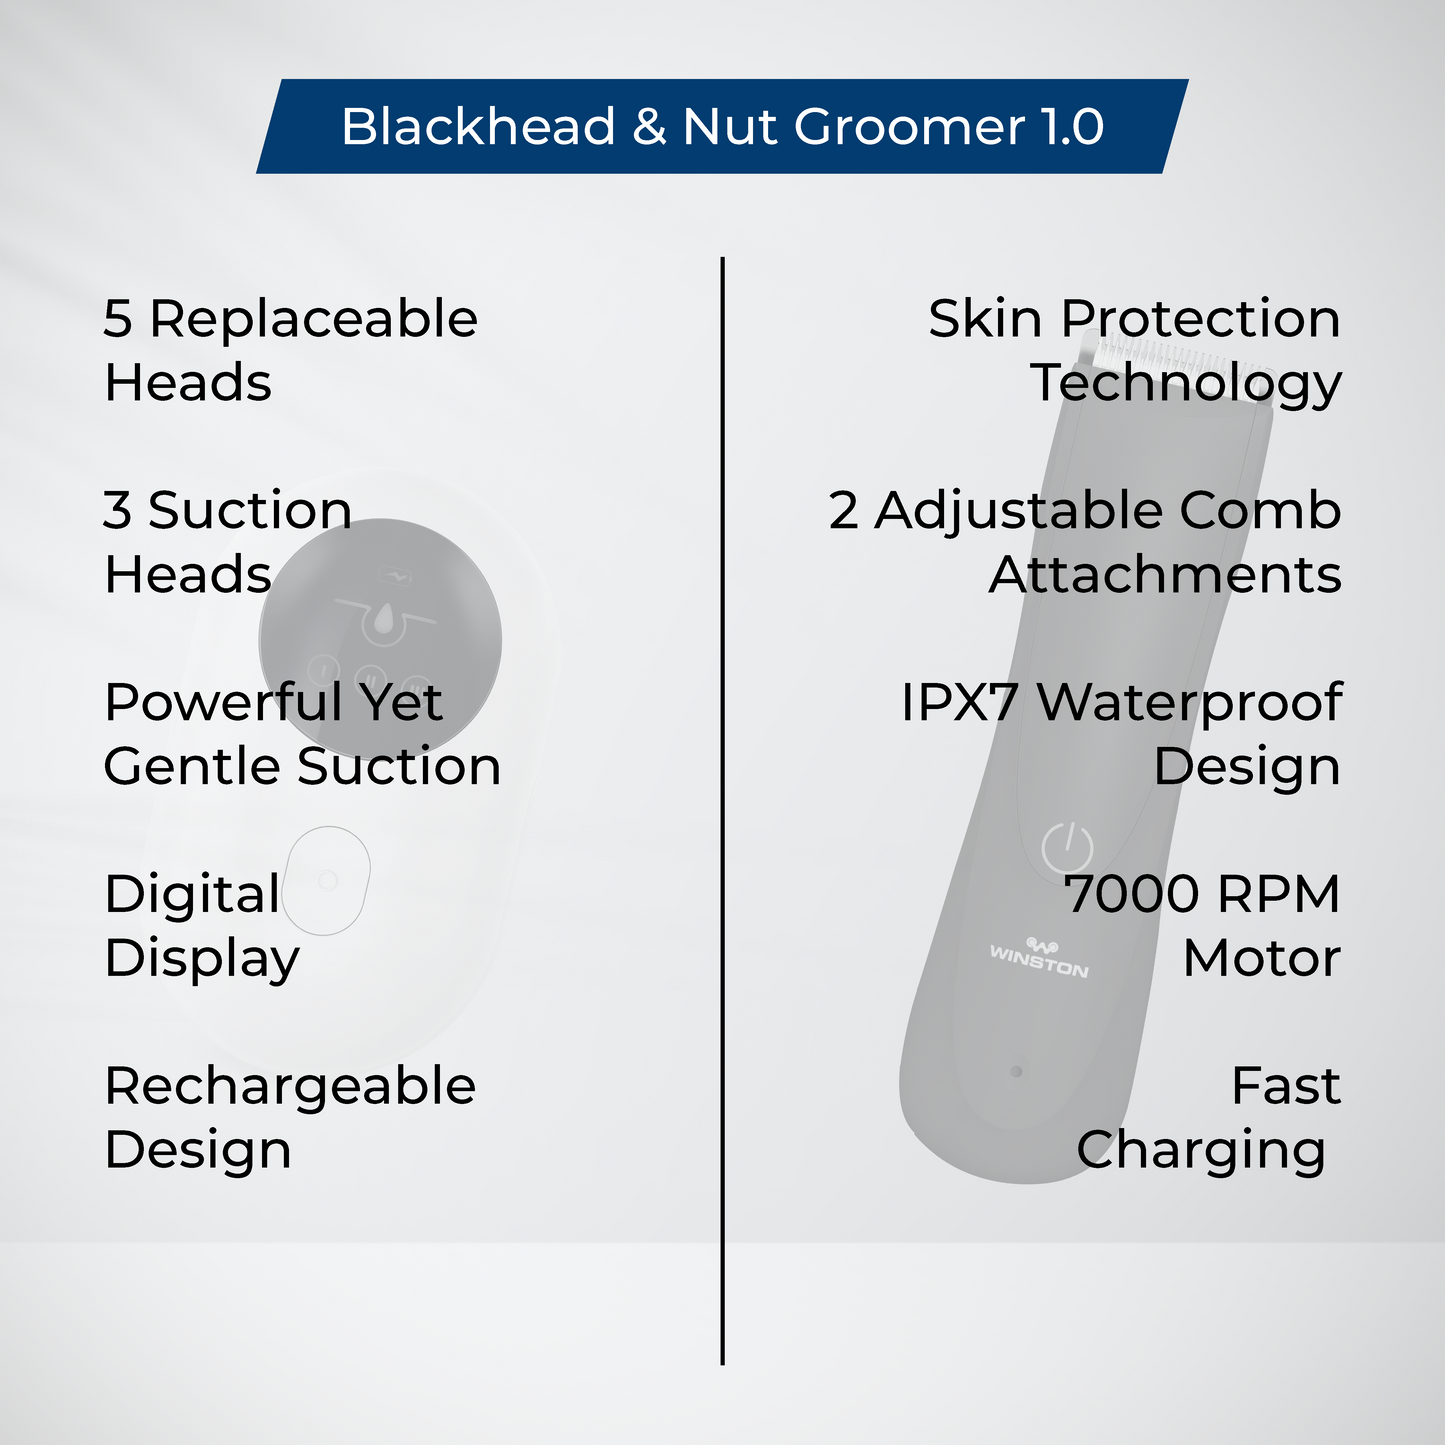 Blackhead & Nut Groomer 1.0 Combo